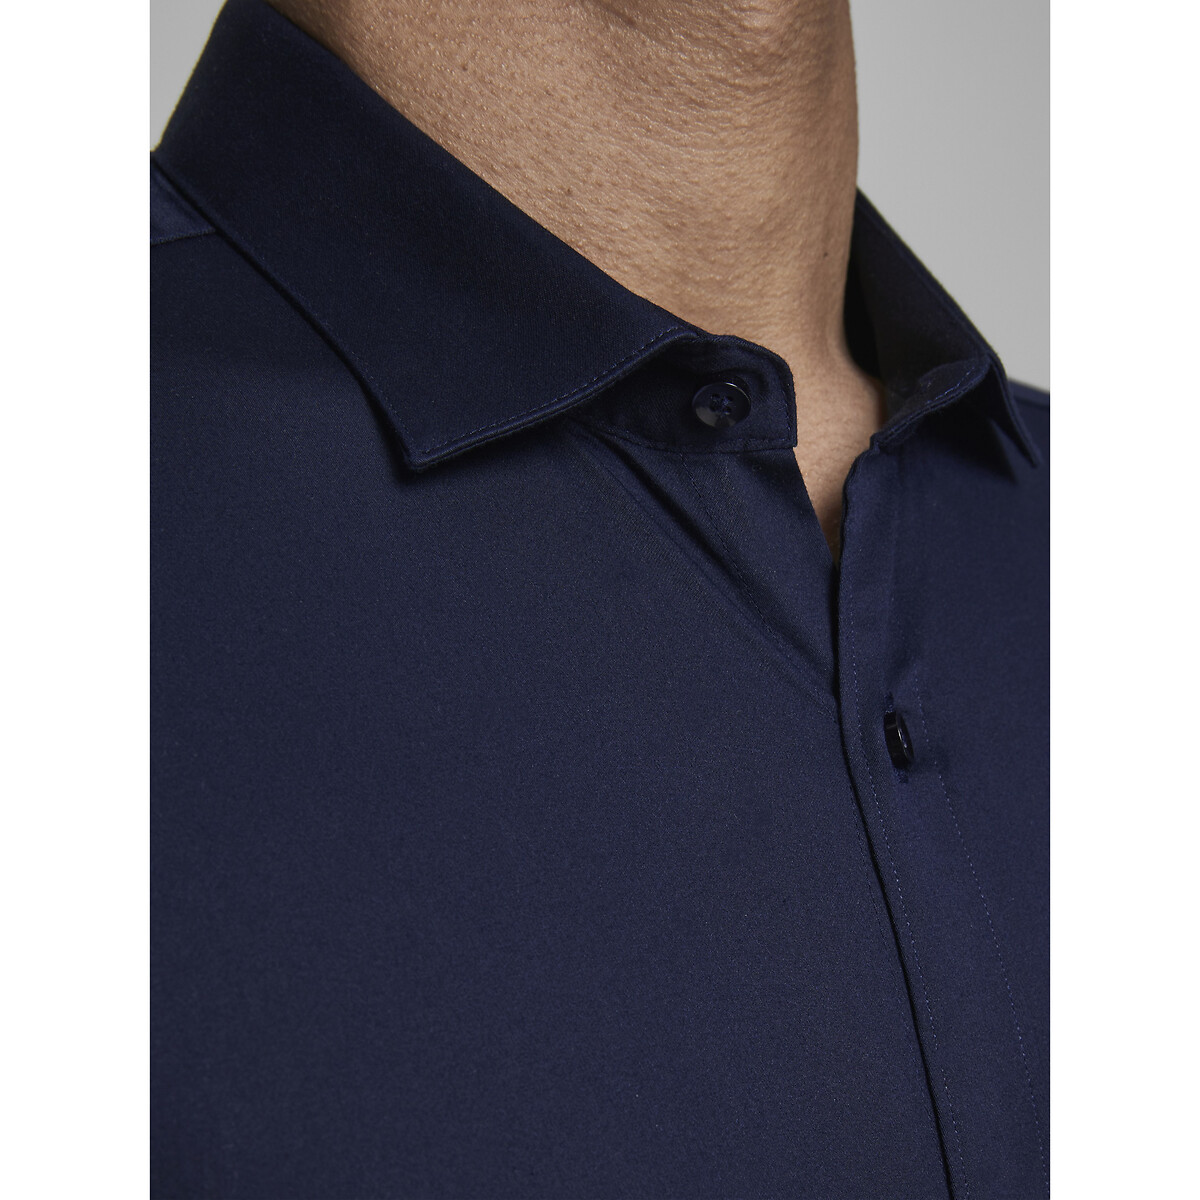 Рубашка Суперслим Jjprparma L синий LaRedoute, размер L - фото 3